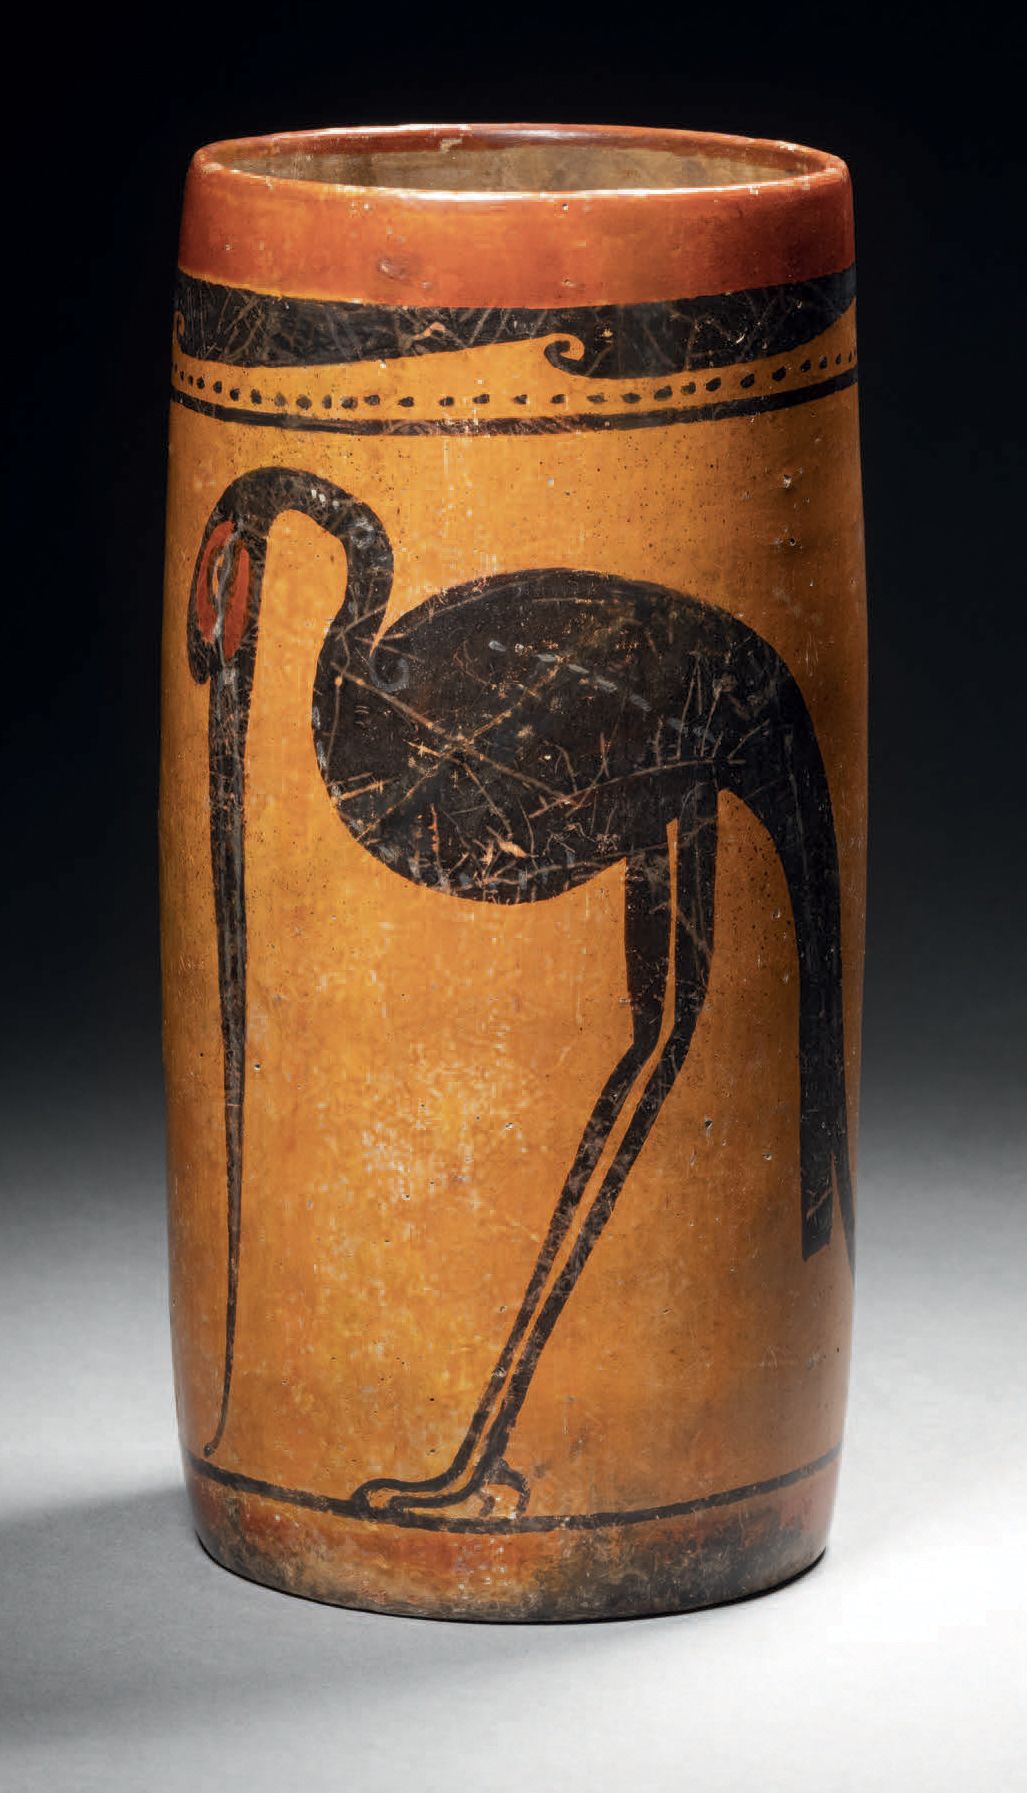 Null 饰有两只水鸟的重要花瓶 玛雅文化，墨西哥
古典，公元600-900年
橙色滑液上的多色陶瓷
高19厘米 - 深9厘米
玛雅多色圆柱形花瓶，有两只水鸟，&hellip;